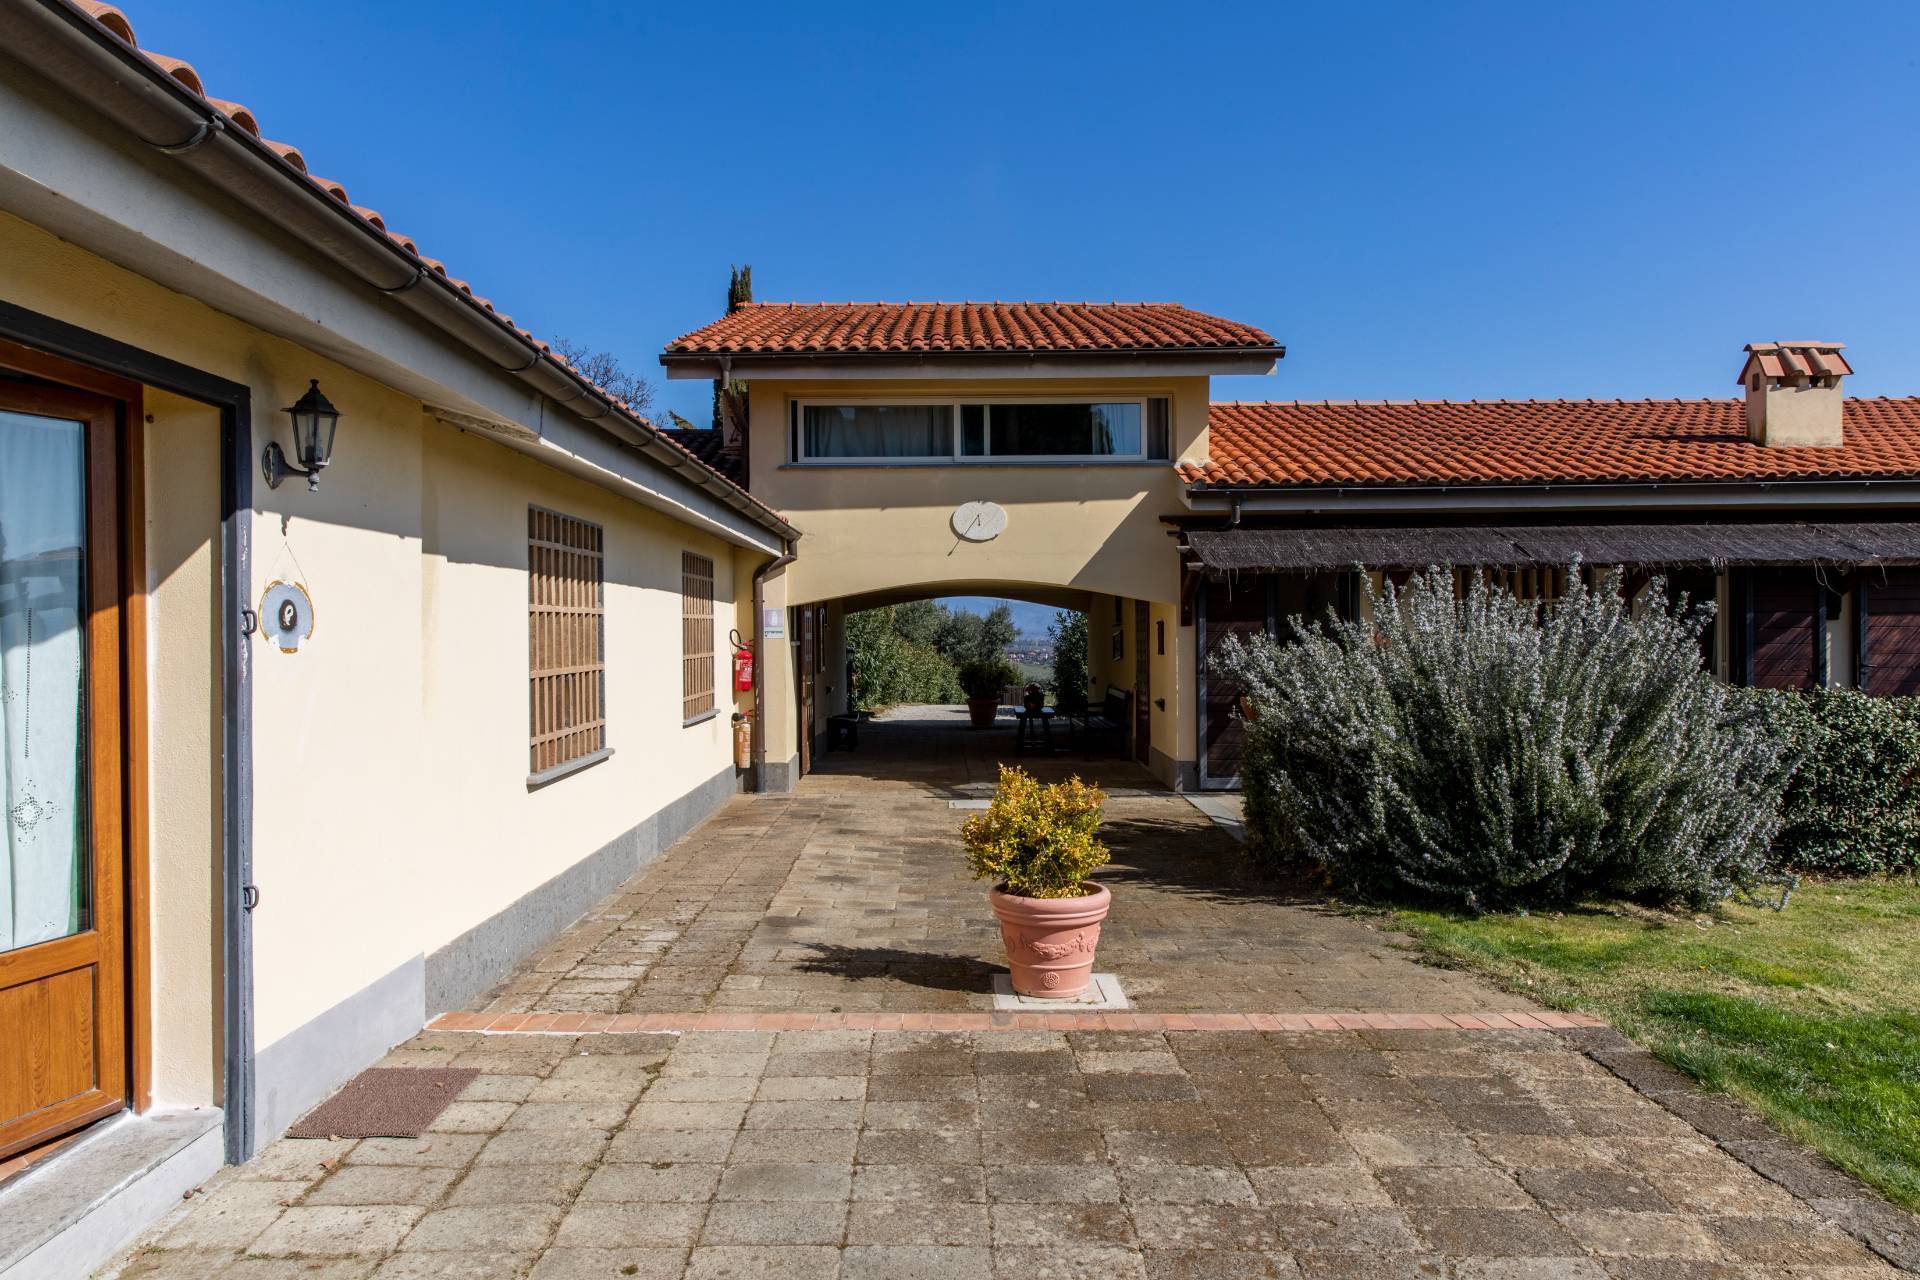 Villa in Vendita a Castelnuovo Di Porto: 5 locali, 1100 mq - Foto 27